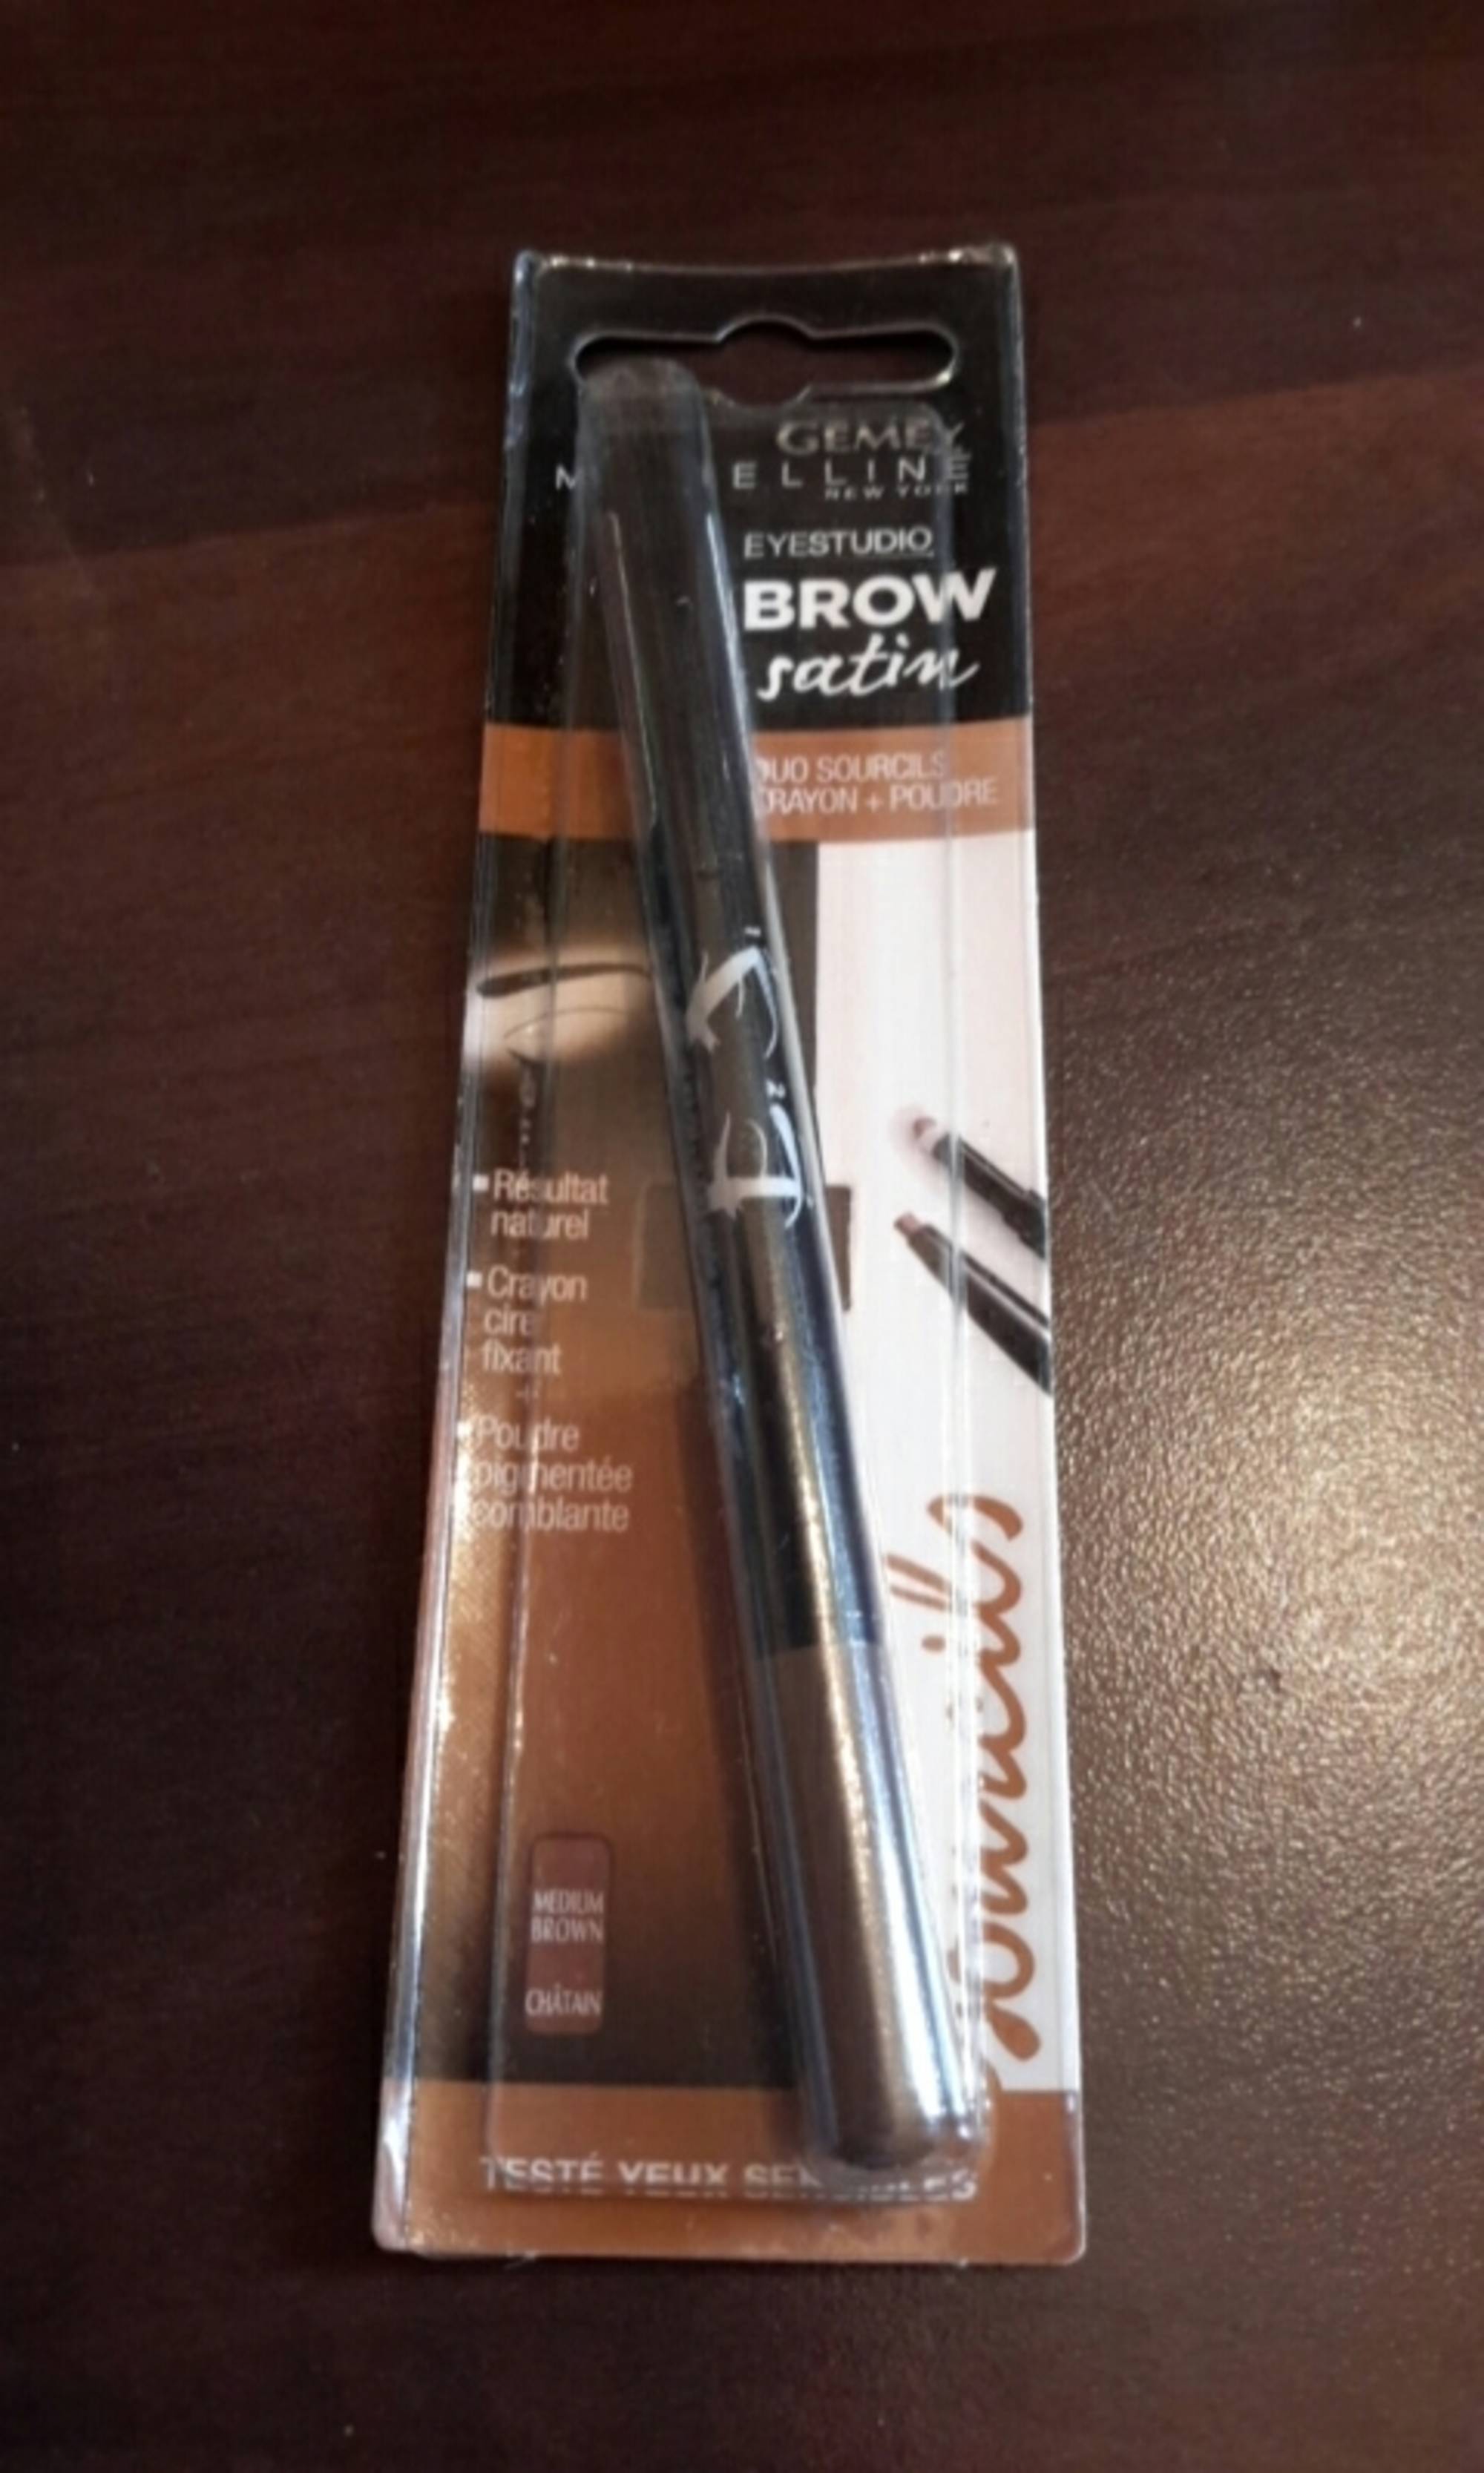 GEMEY MAYBELLINE - Eyestudio brow satin - Duo sourcils crayon + poudre medium brown châtain